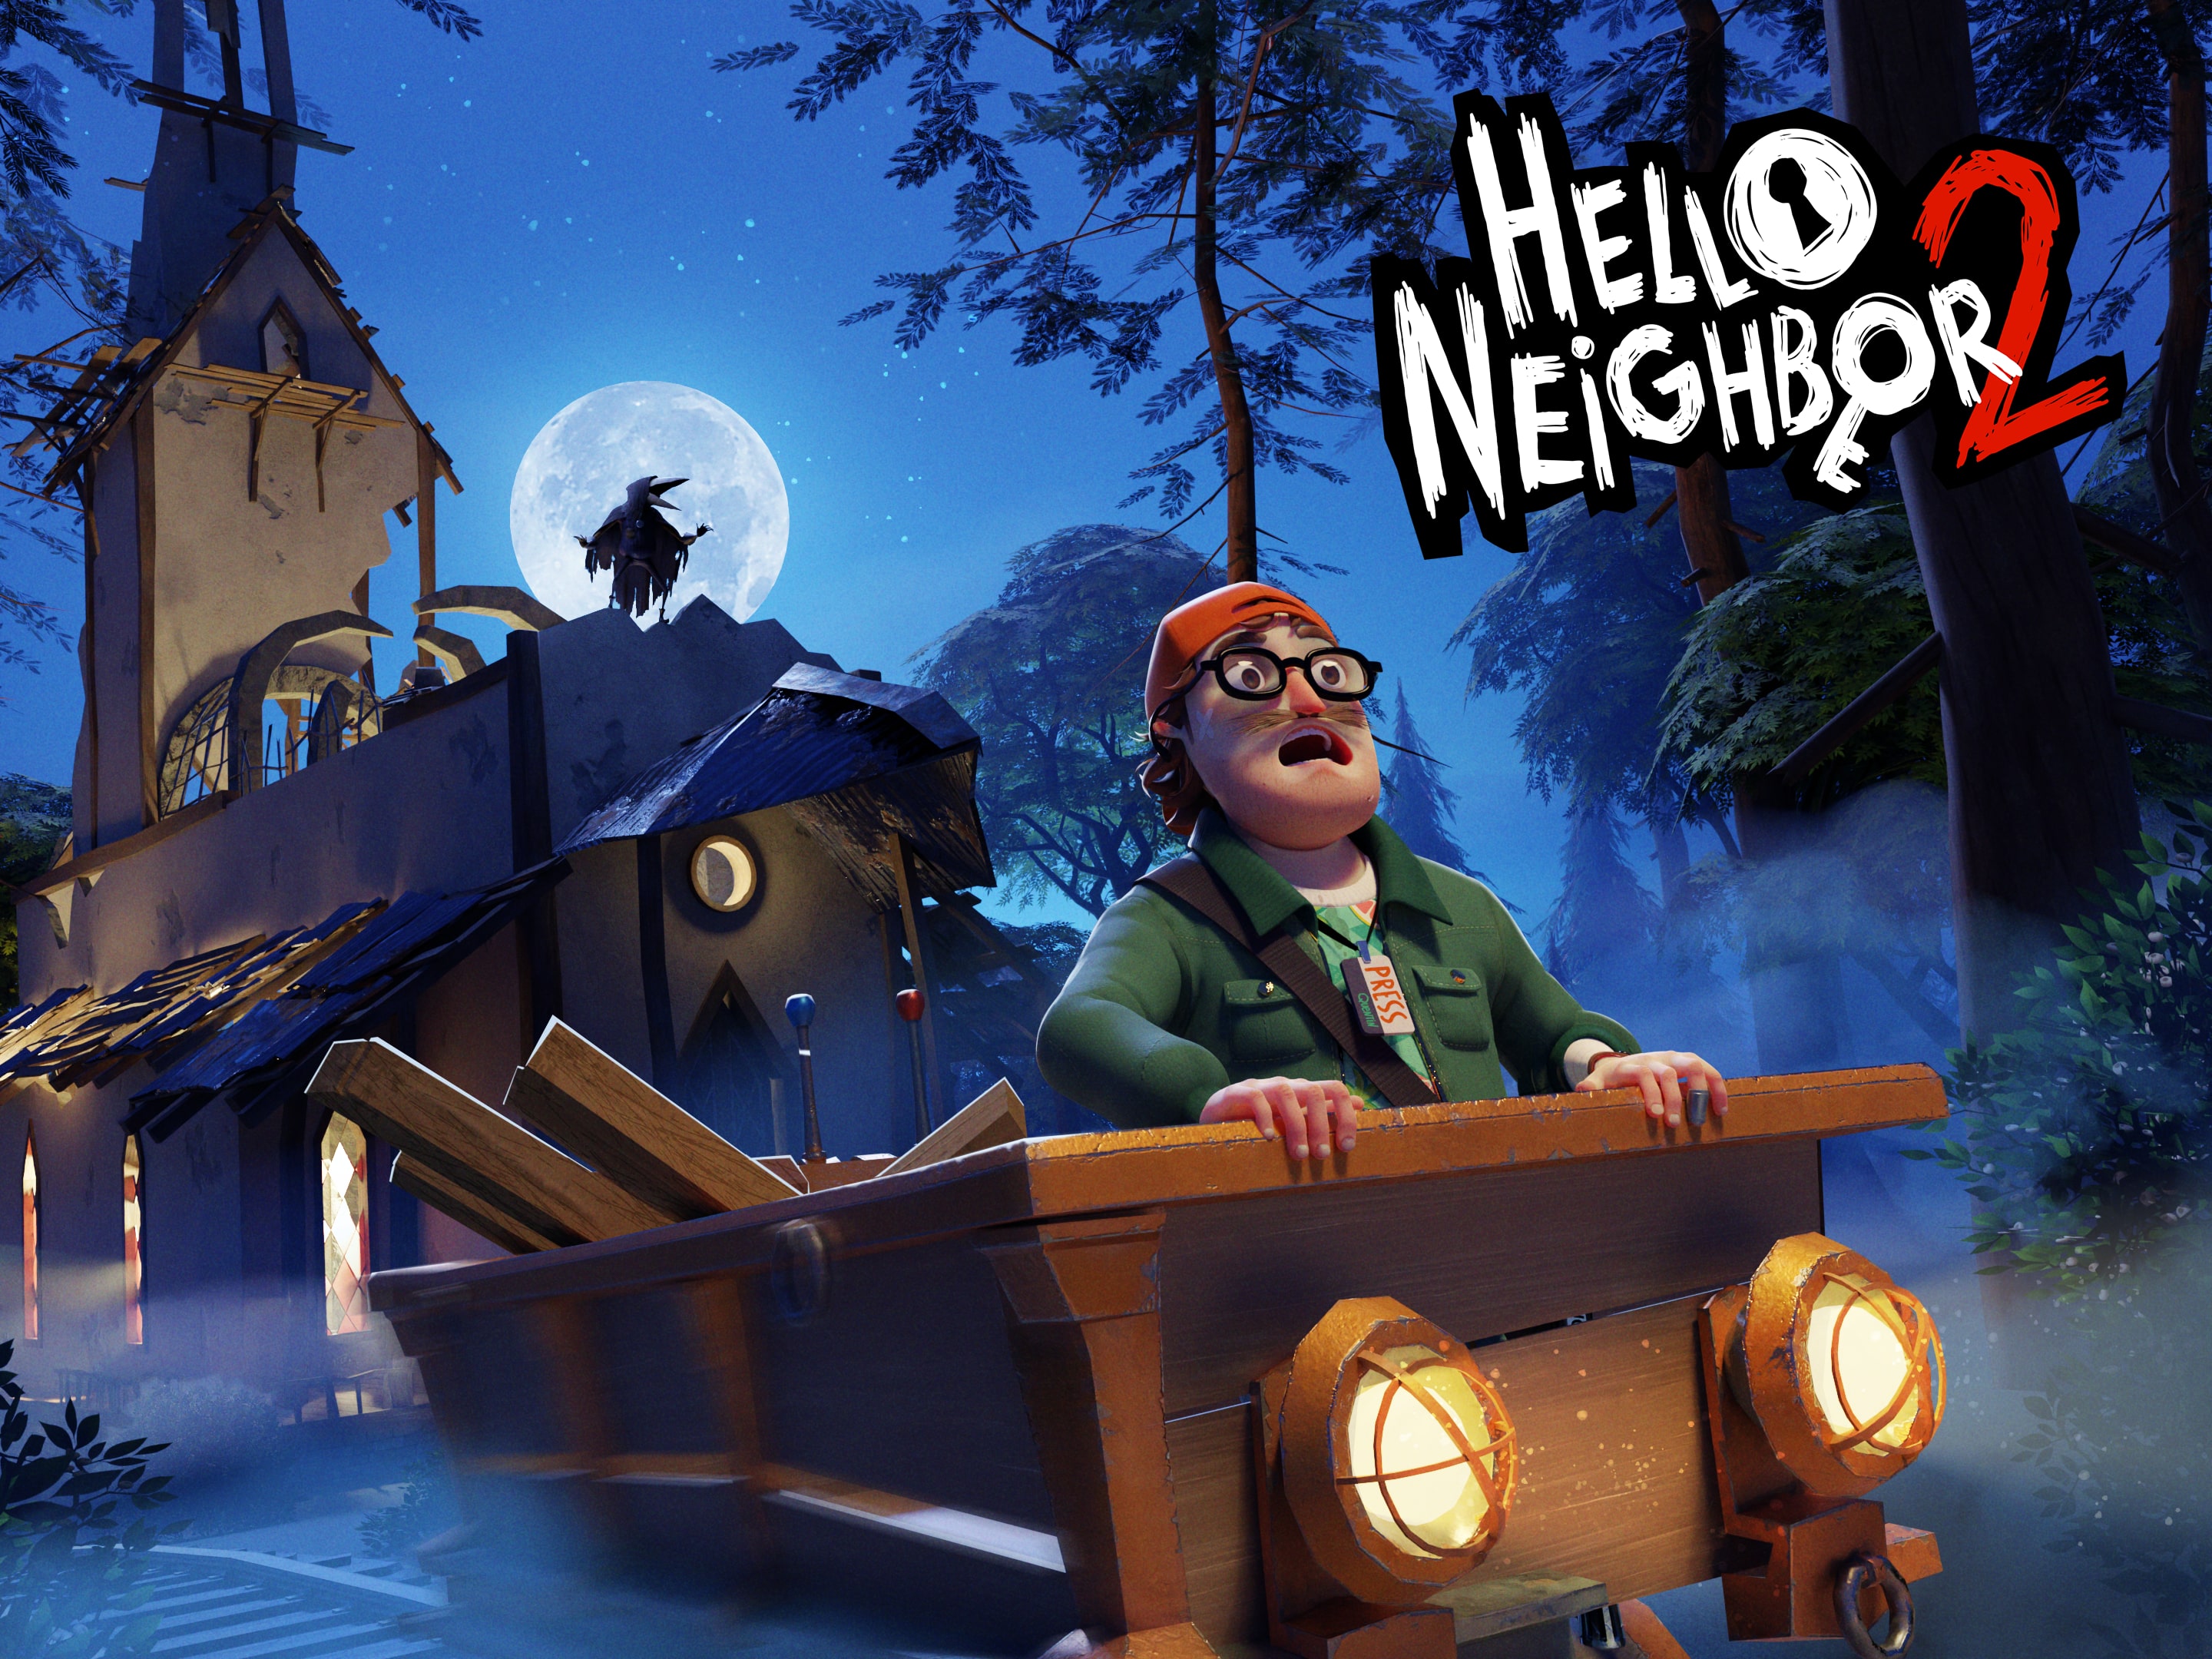 Jogo Hello Neighbor Novo Para PS4 - Loja de Vídeo Games Fortaleza